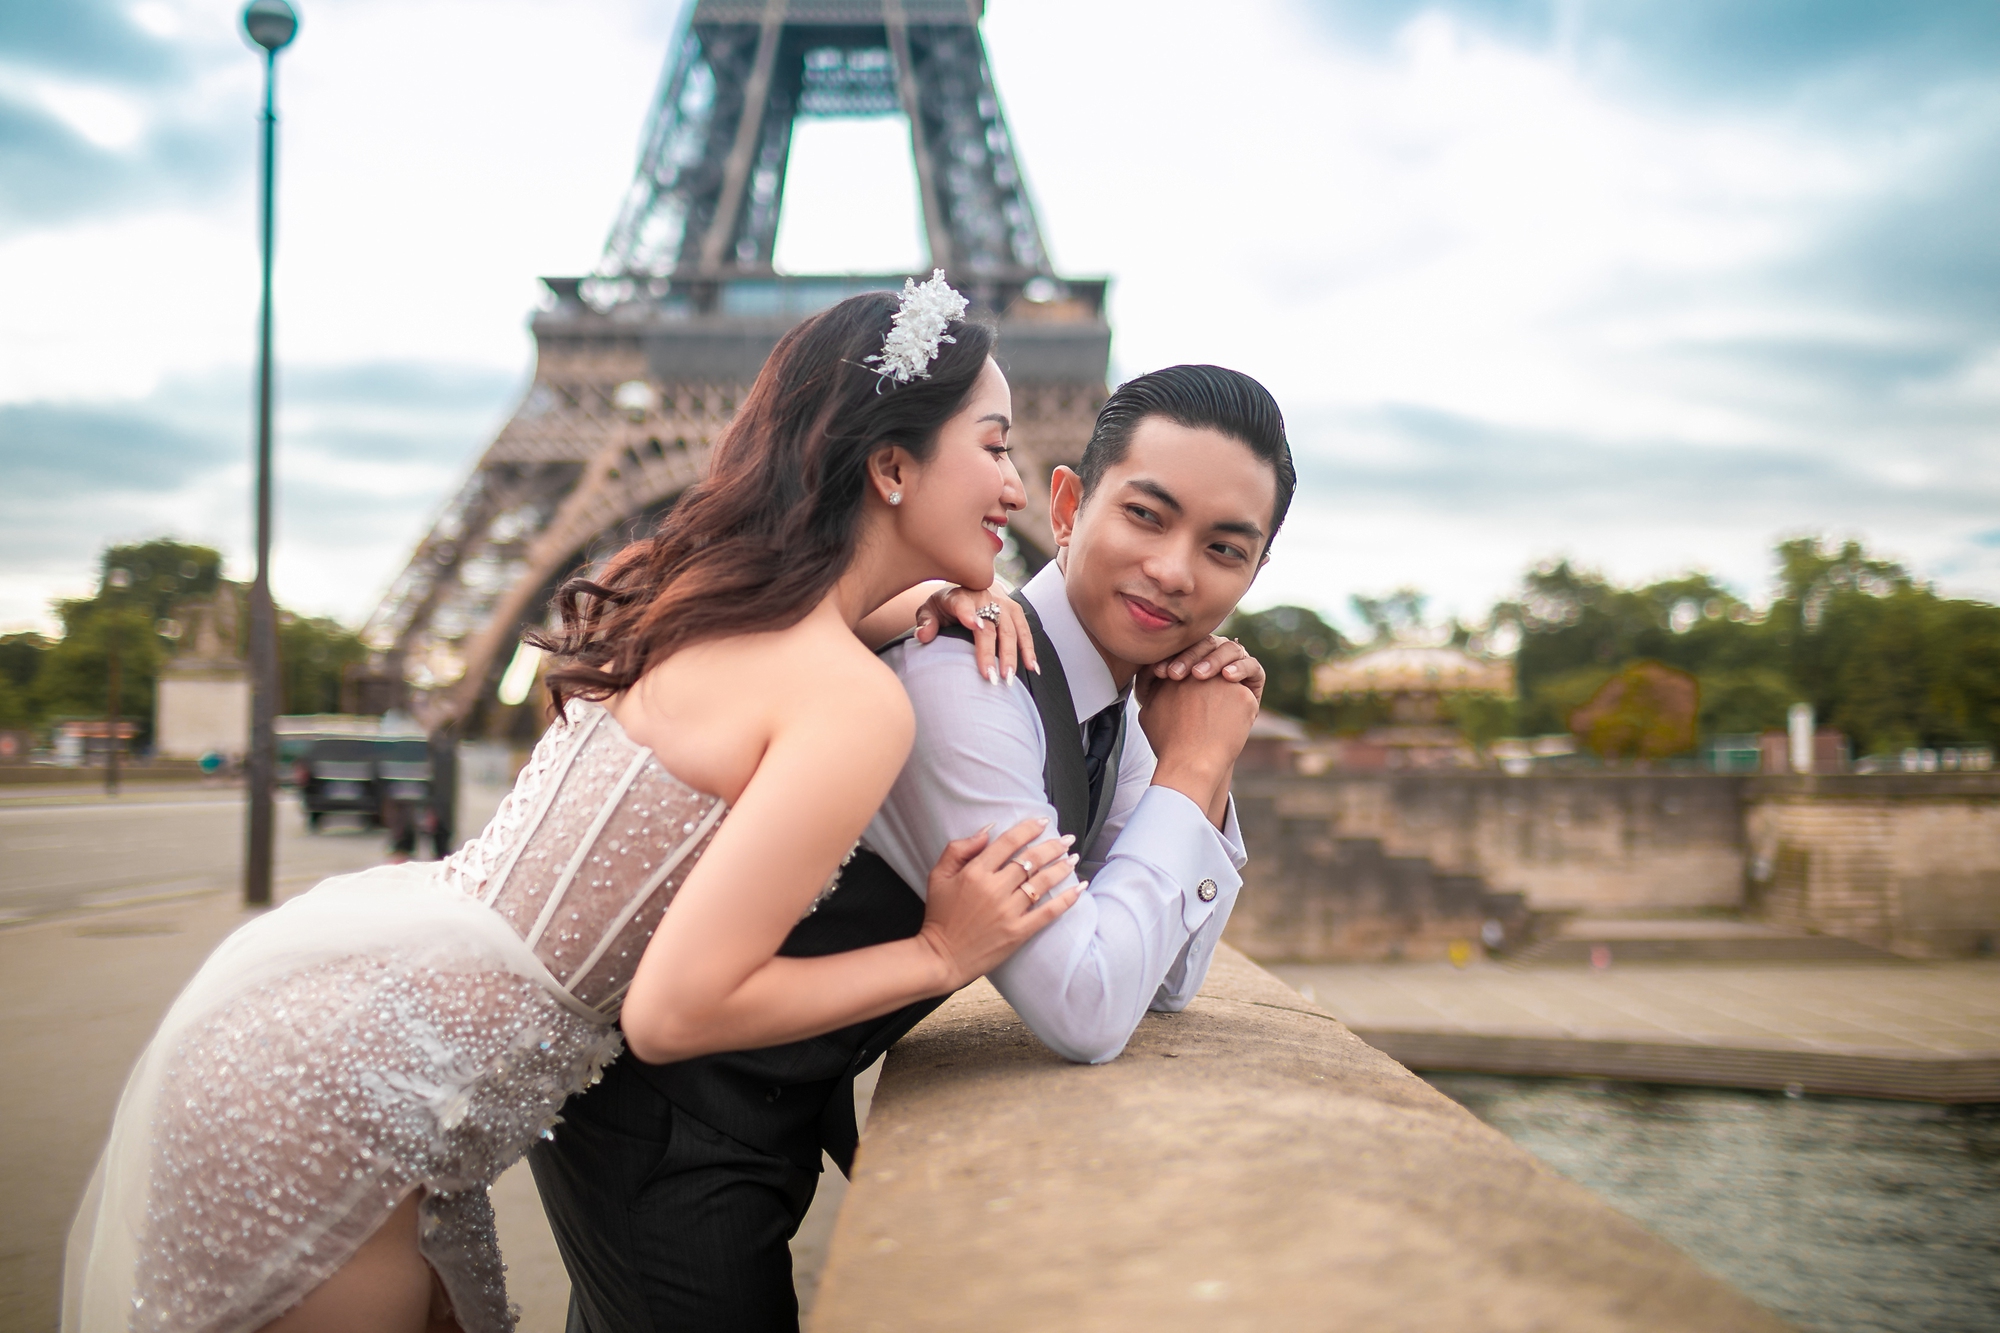 Bộ ảnh cưới lãng mạn của Khánh Thi và Phan Hiển tại tháp Eiffel khiến bao trái tim rung động. Đôi uyên ương trẻ trung và đẹp đôi hòa quyện vào không gian lãng mạn của Paris, tạo ra một bức tranh tuyệt đẹp về tình yêu.